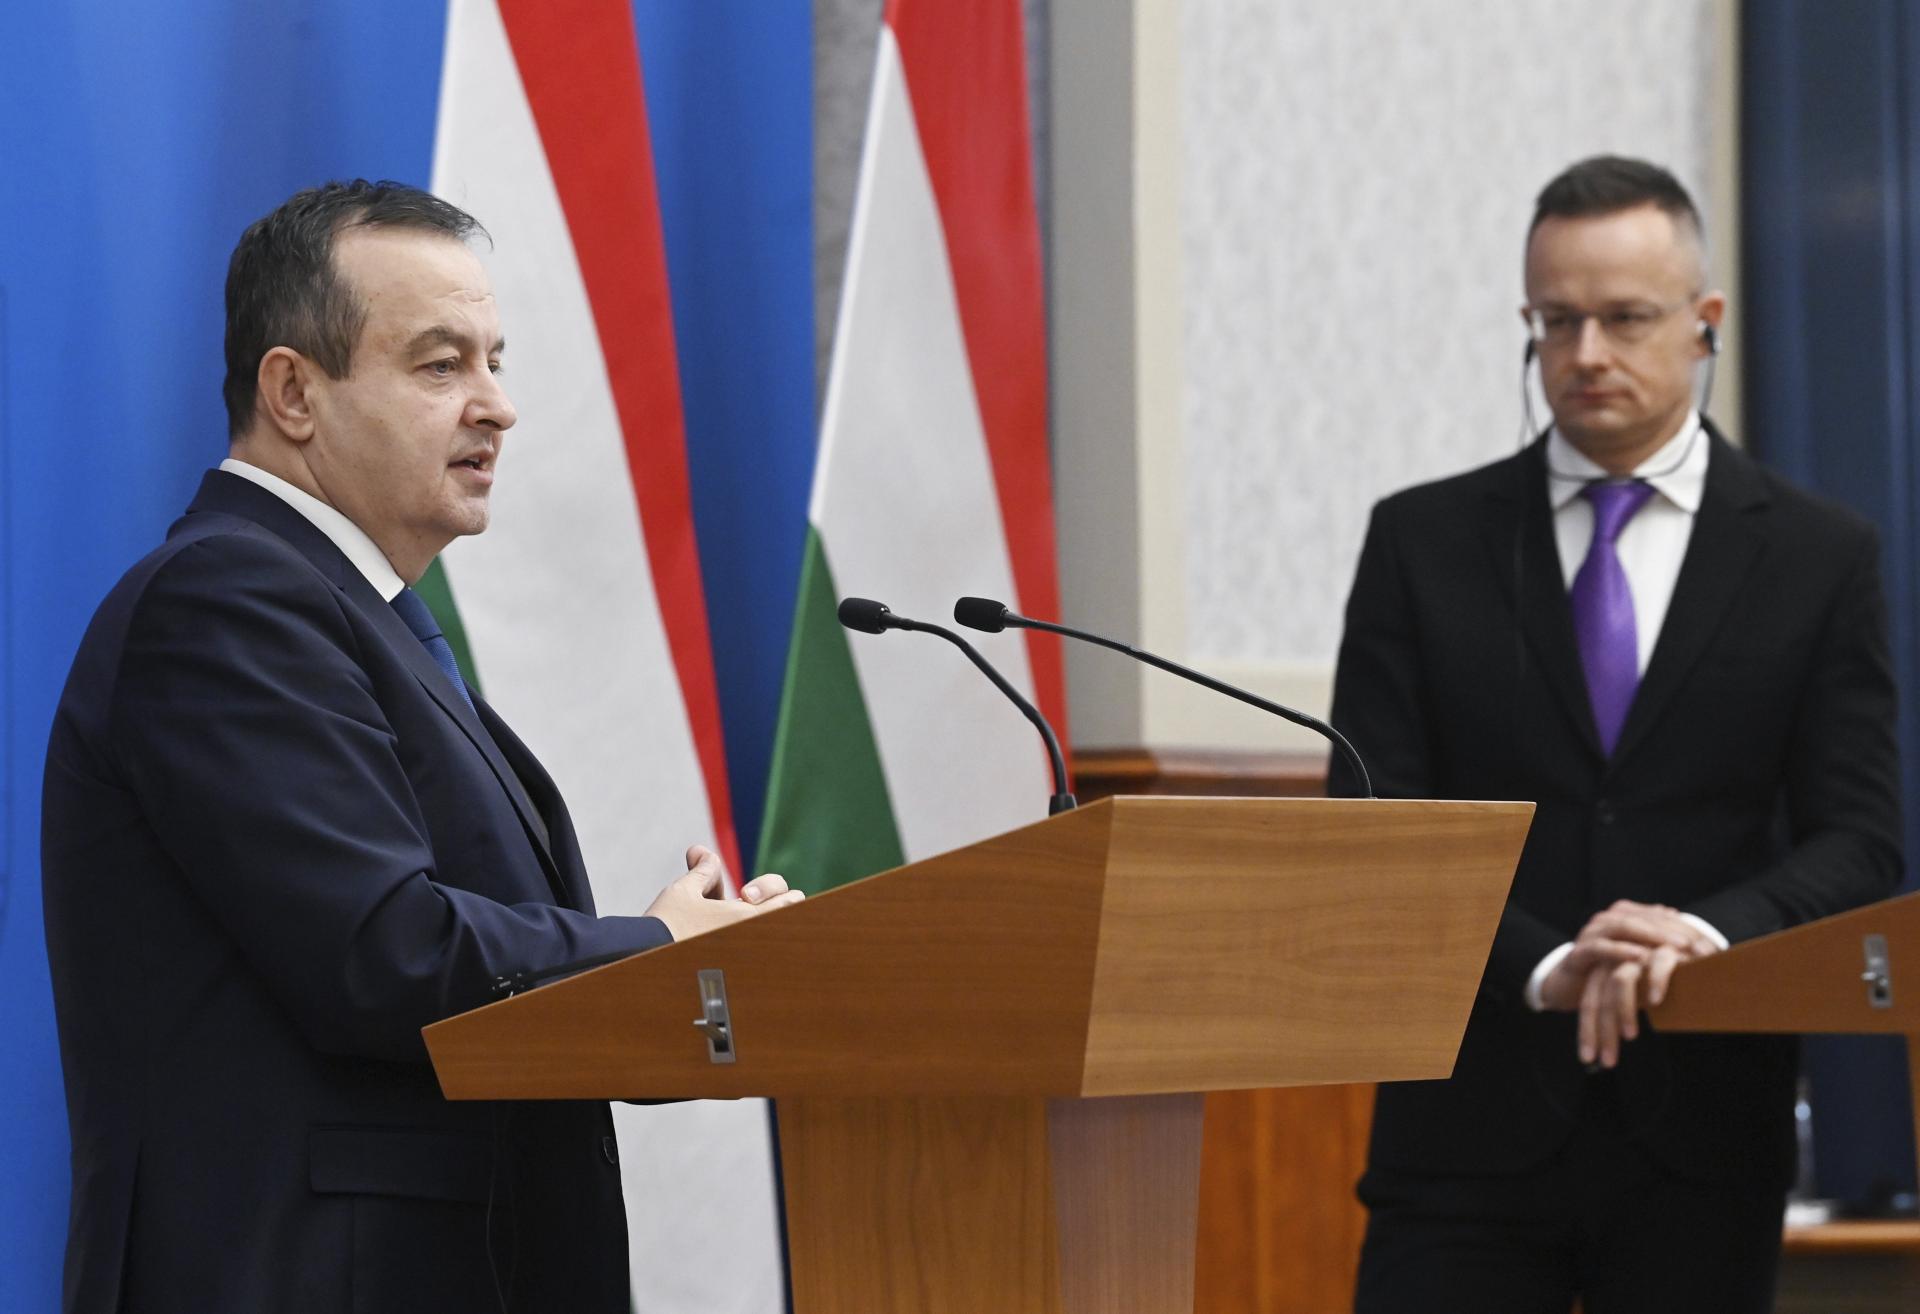 Zlá spolupráca Východu a Západu trápi najviac strednú Európu, tvrdí maďarský minister zahraničných vecí